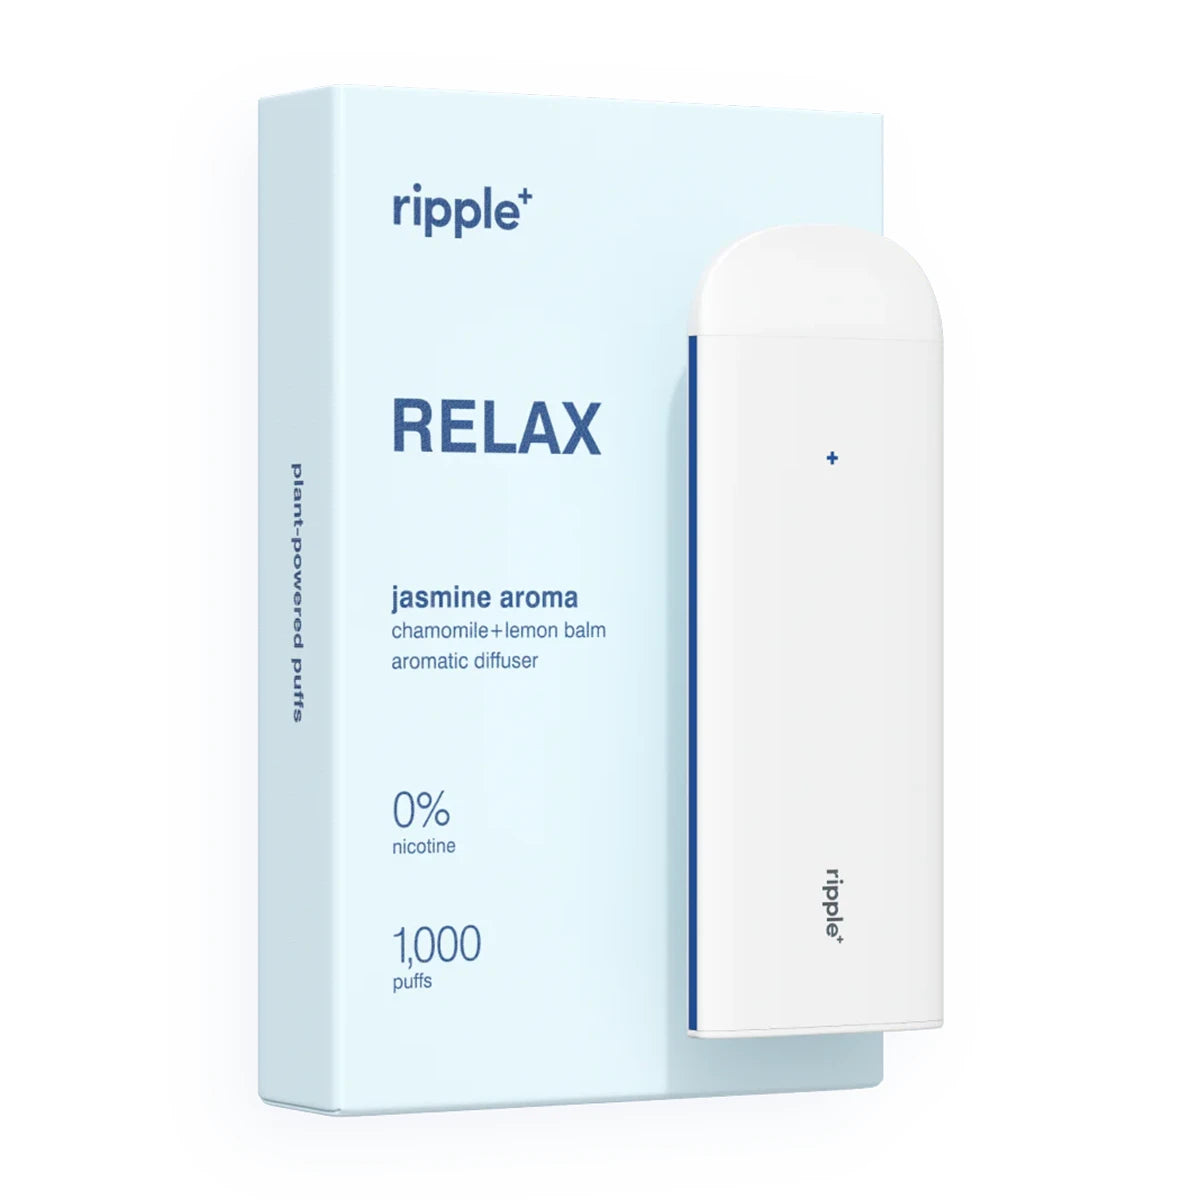 Ripple Zero Nicotine Portable Diffuser - Relax